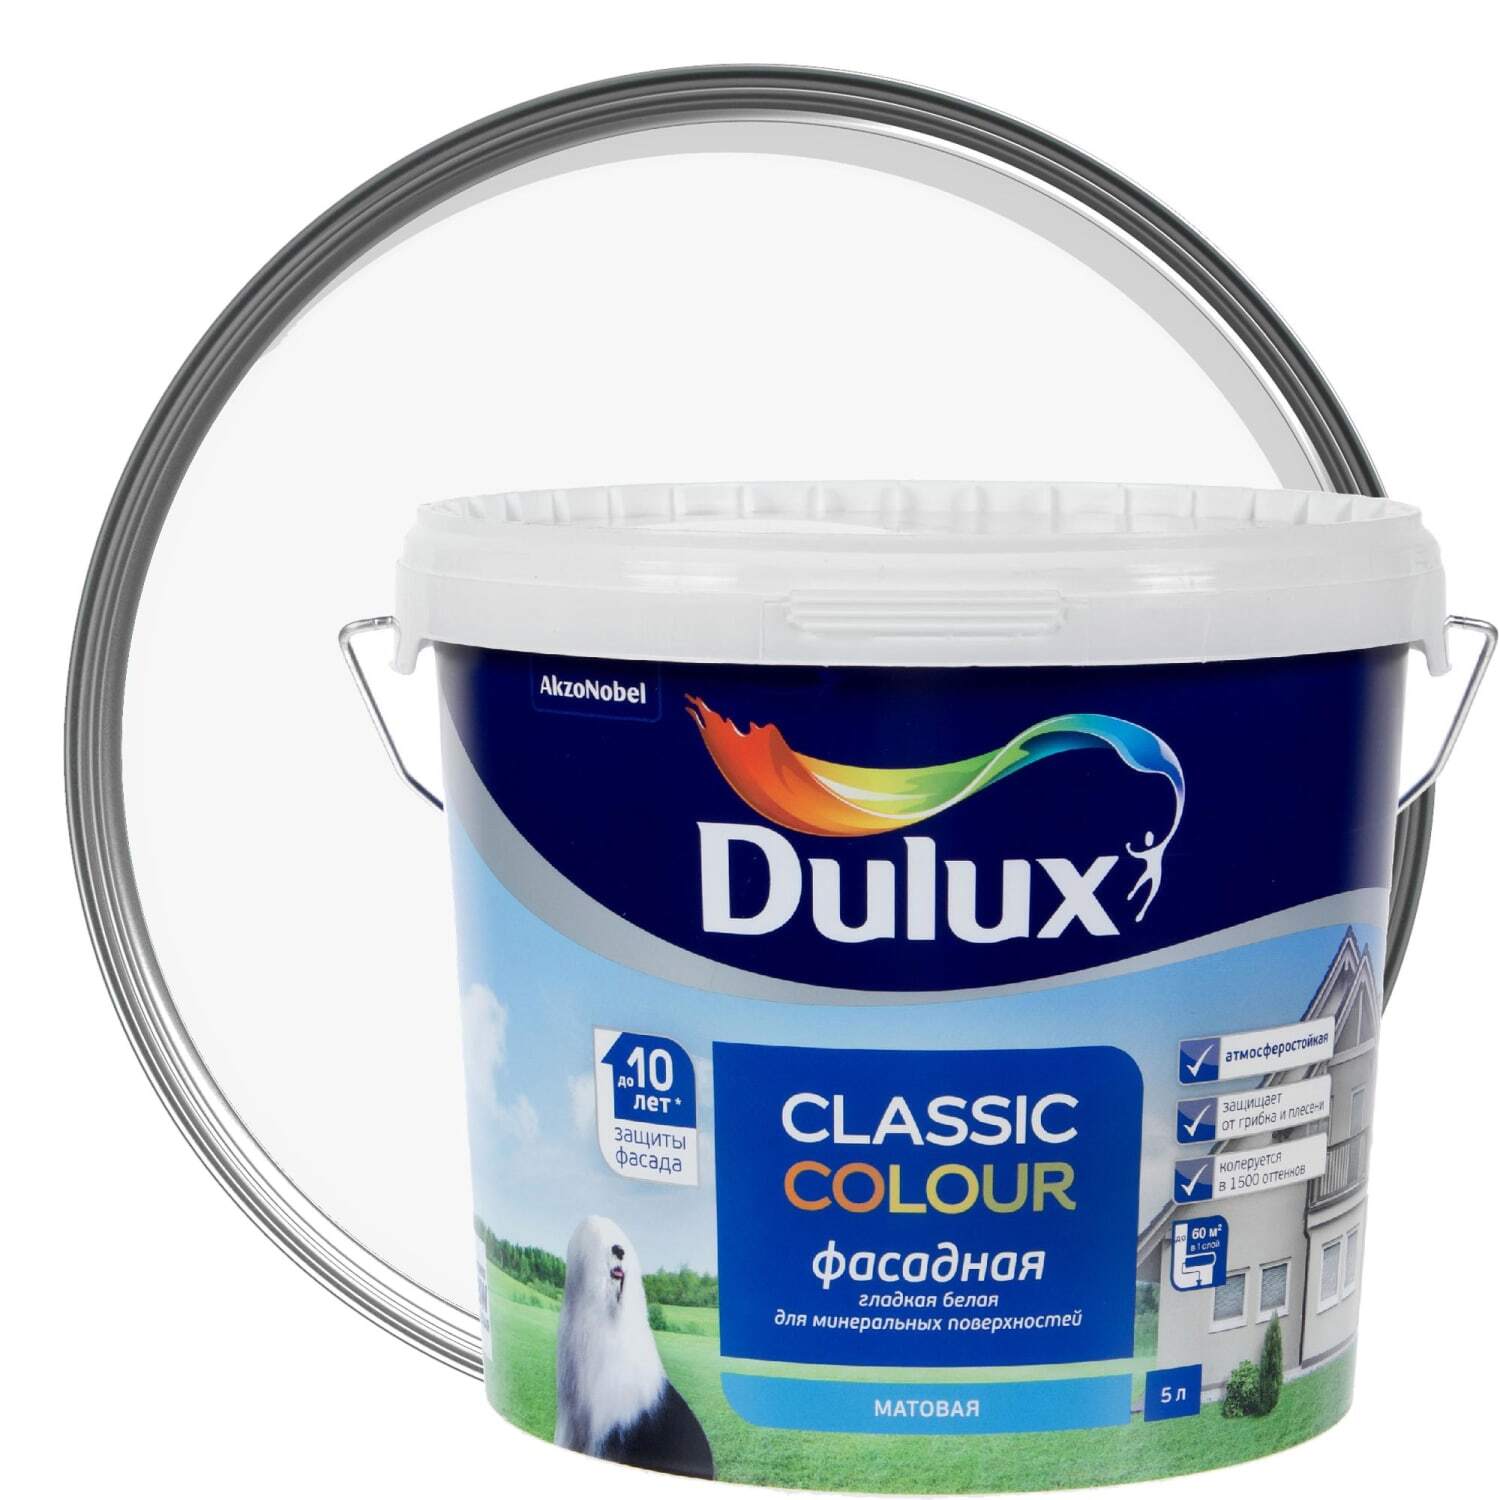 Dulux Classic Colour 10 л